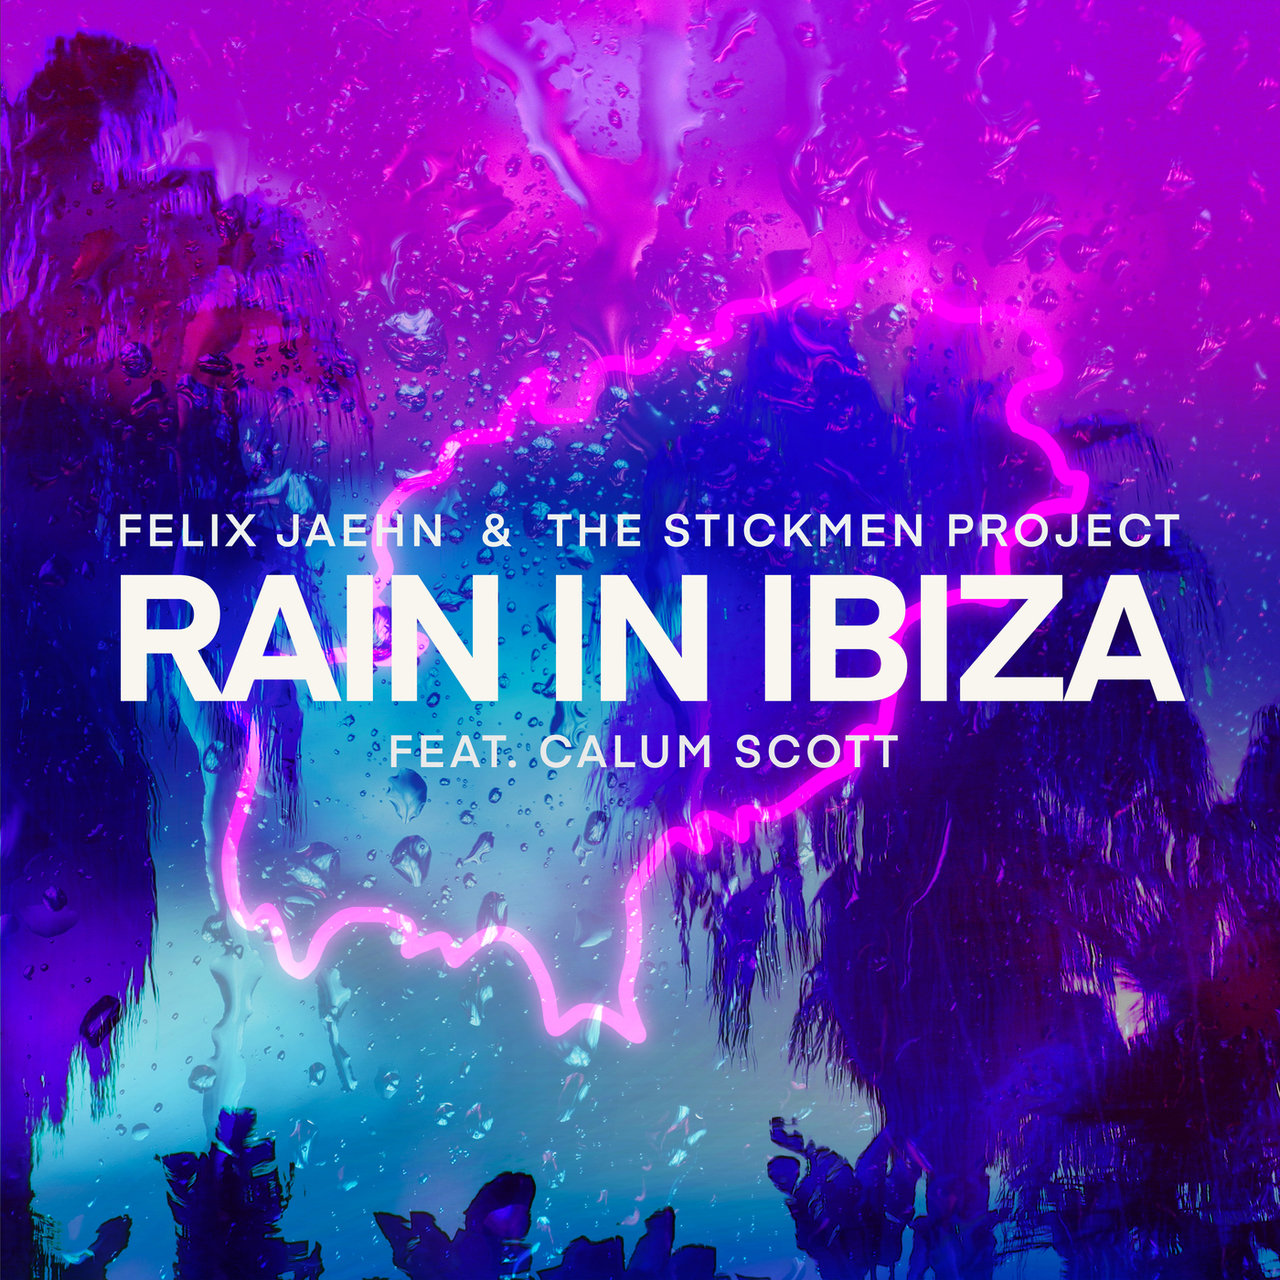 Felix Jaehn & The Stickmen Project featuring Calum Scott — Rain In Ibiza cover artwork